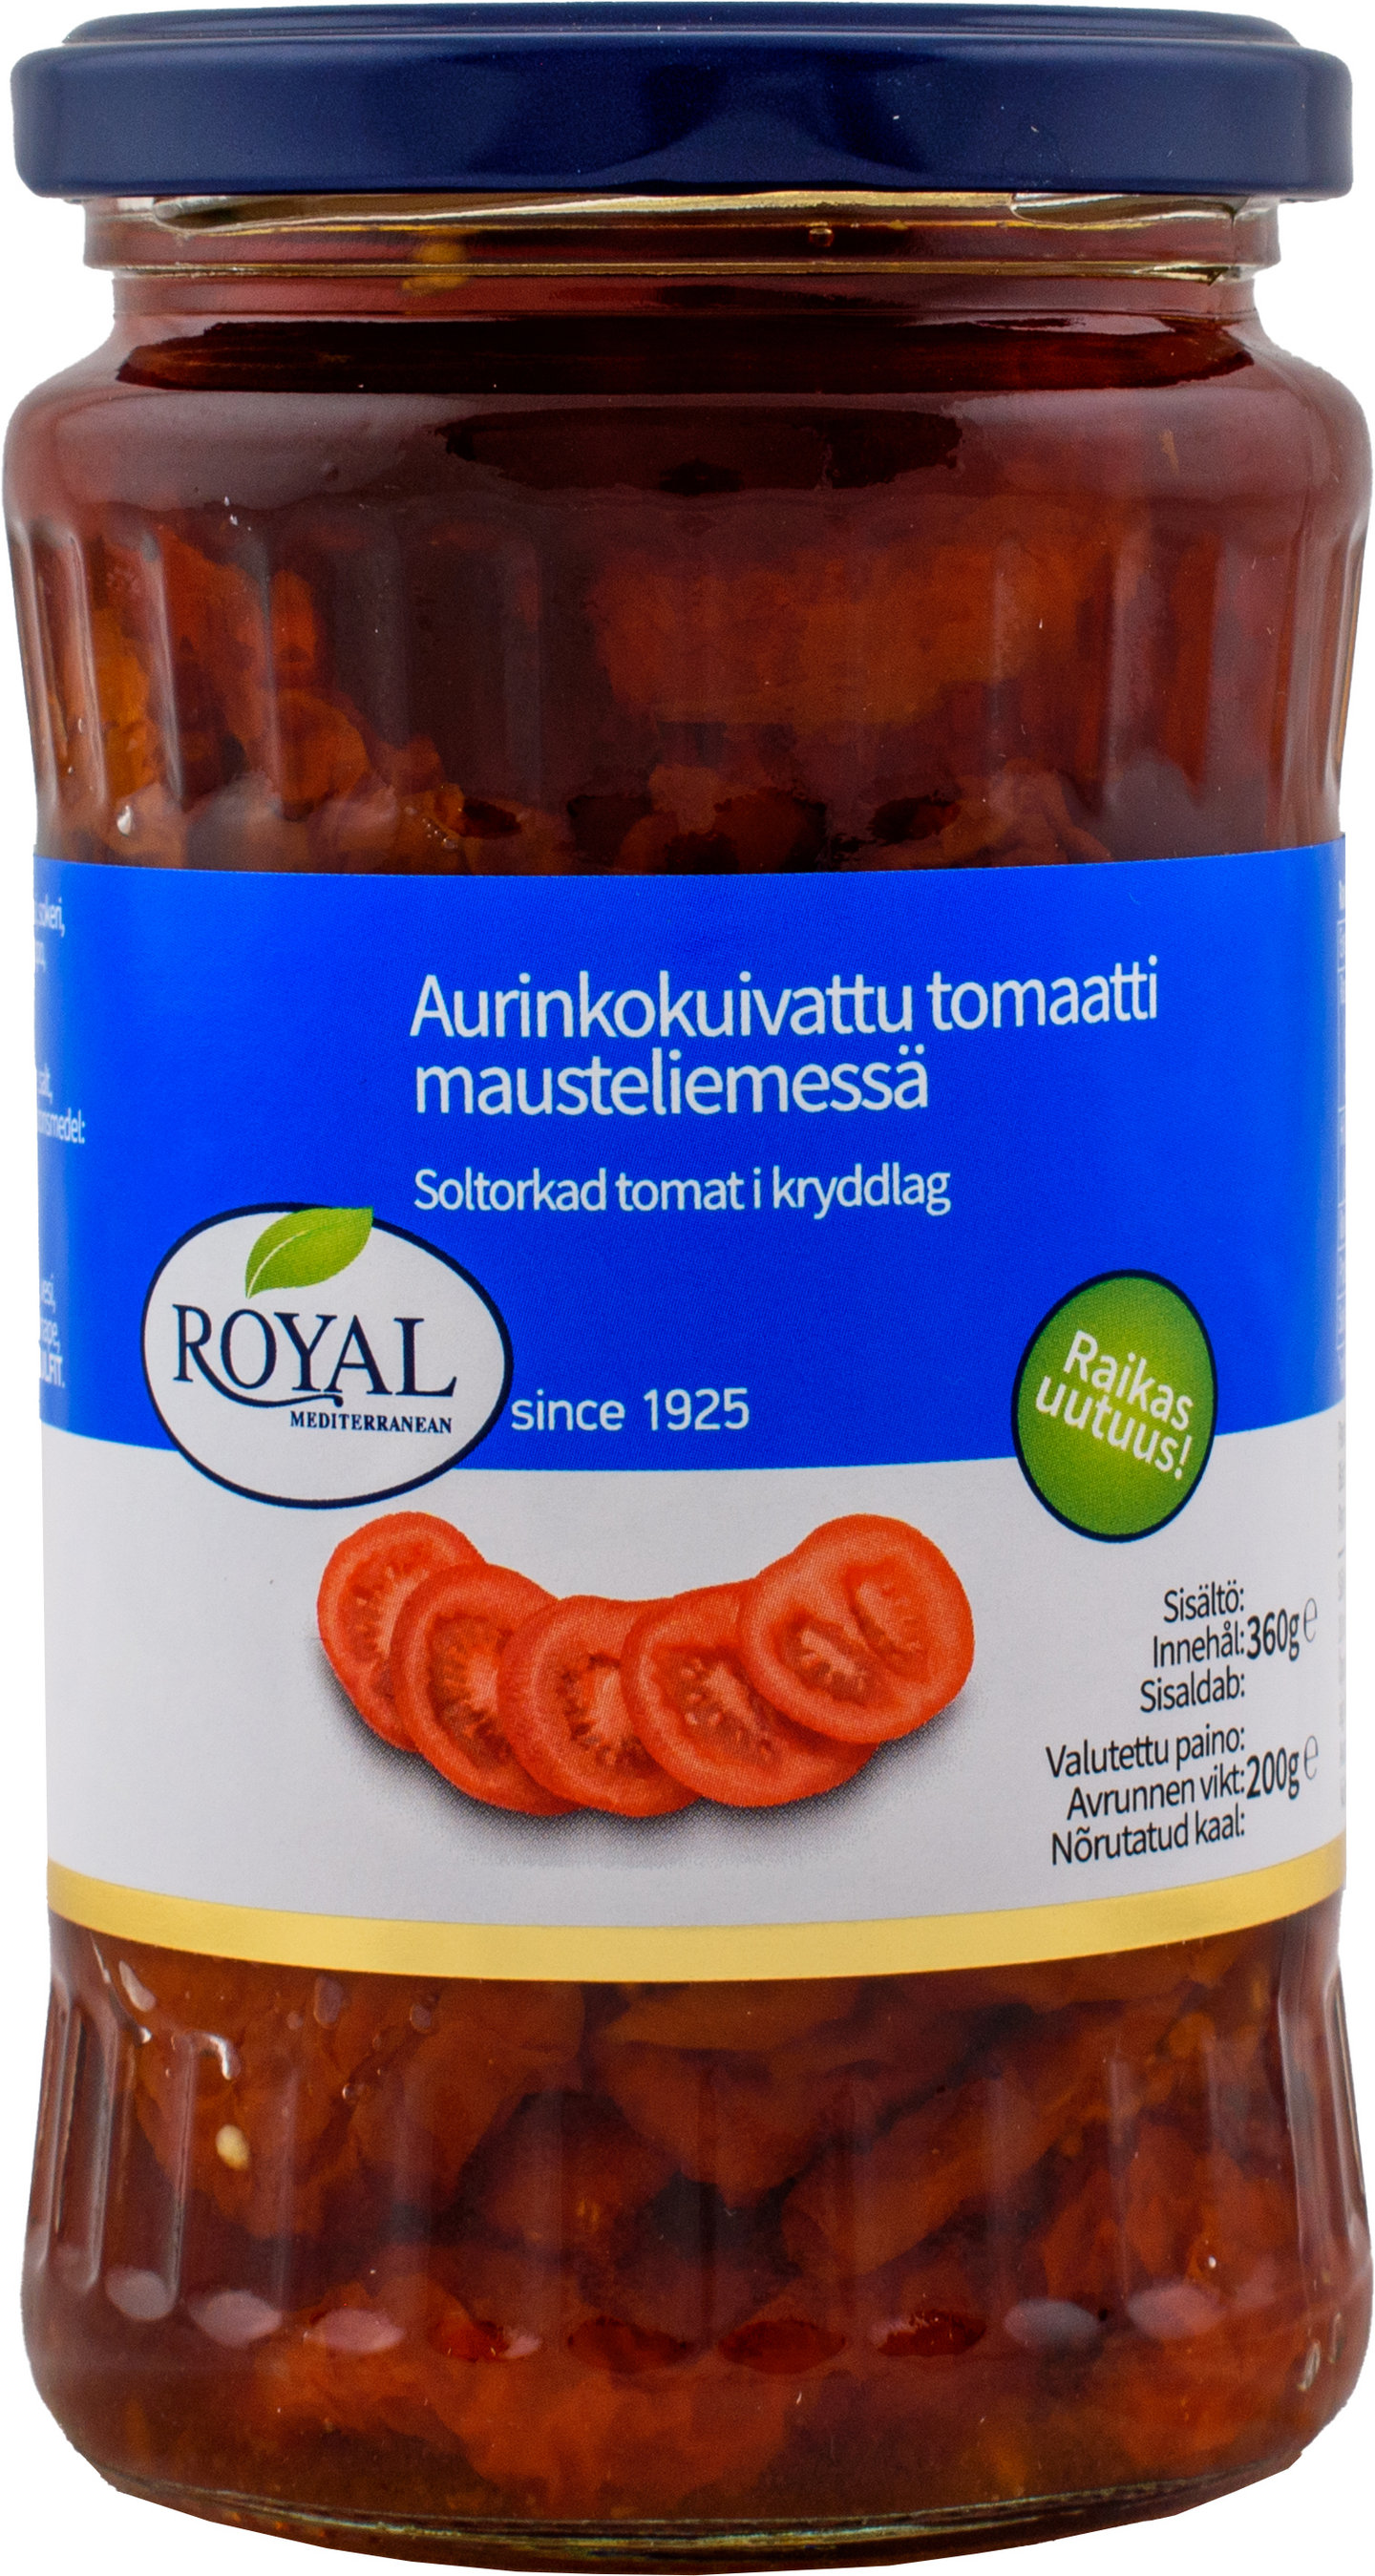 Royal aurinkokuivattu tomaatti mausteliemessä 360g/200g